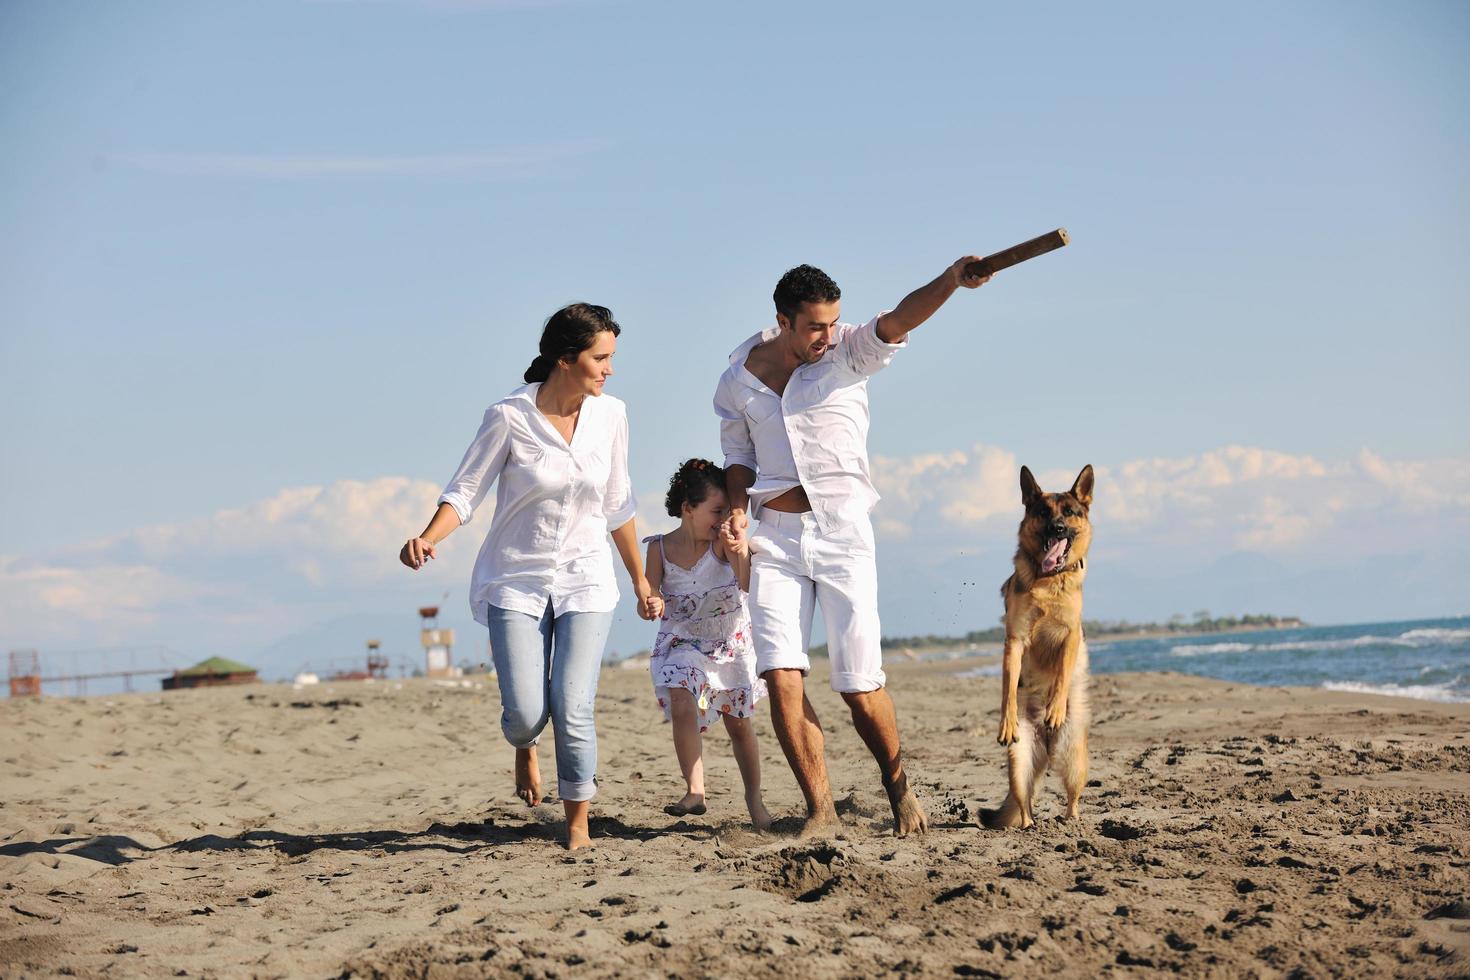 família feliz brincando com cachorro na praia foto